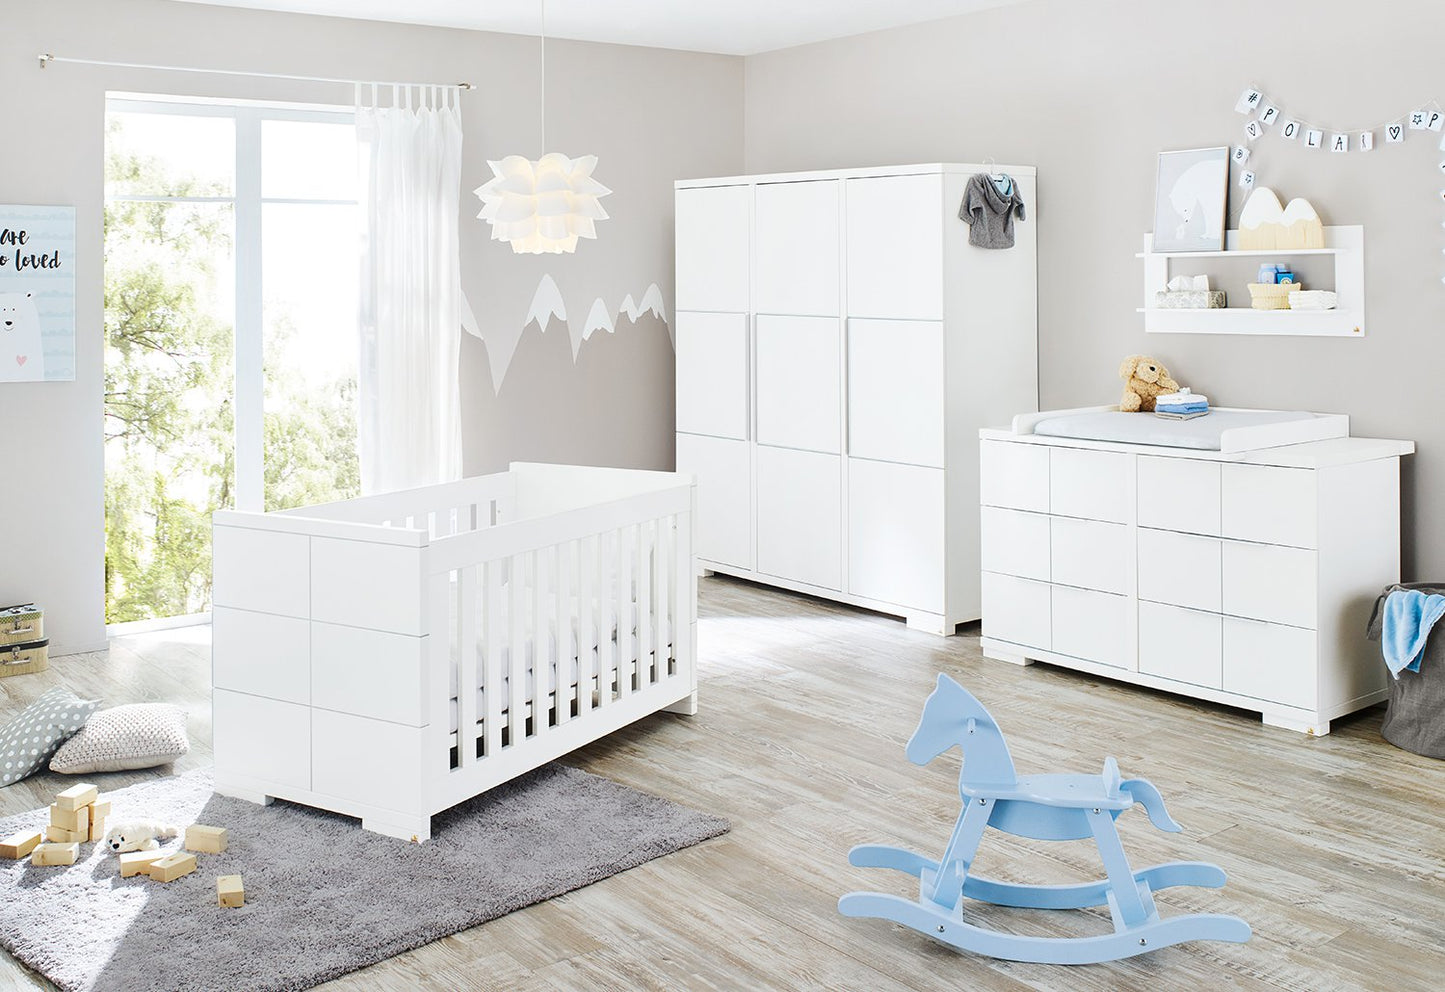 Kinderzimmer 'Polar' extra breit groß3-teilig: Kinderbett, extra breite Wickelkommode, großer Kleiderschrank